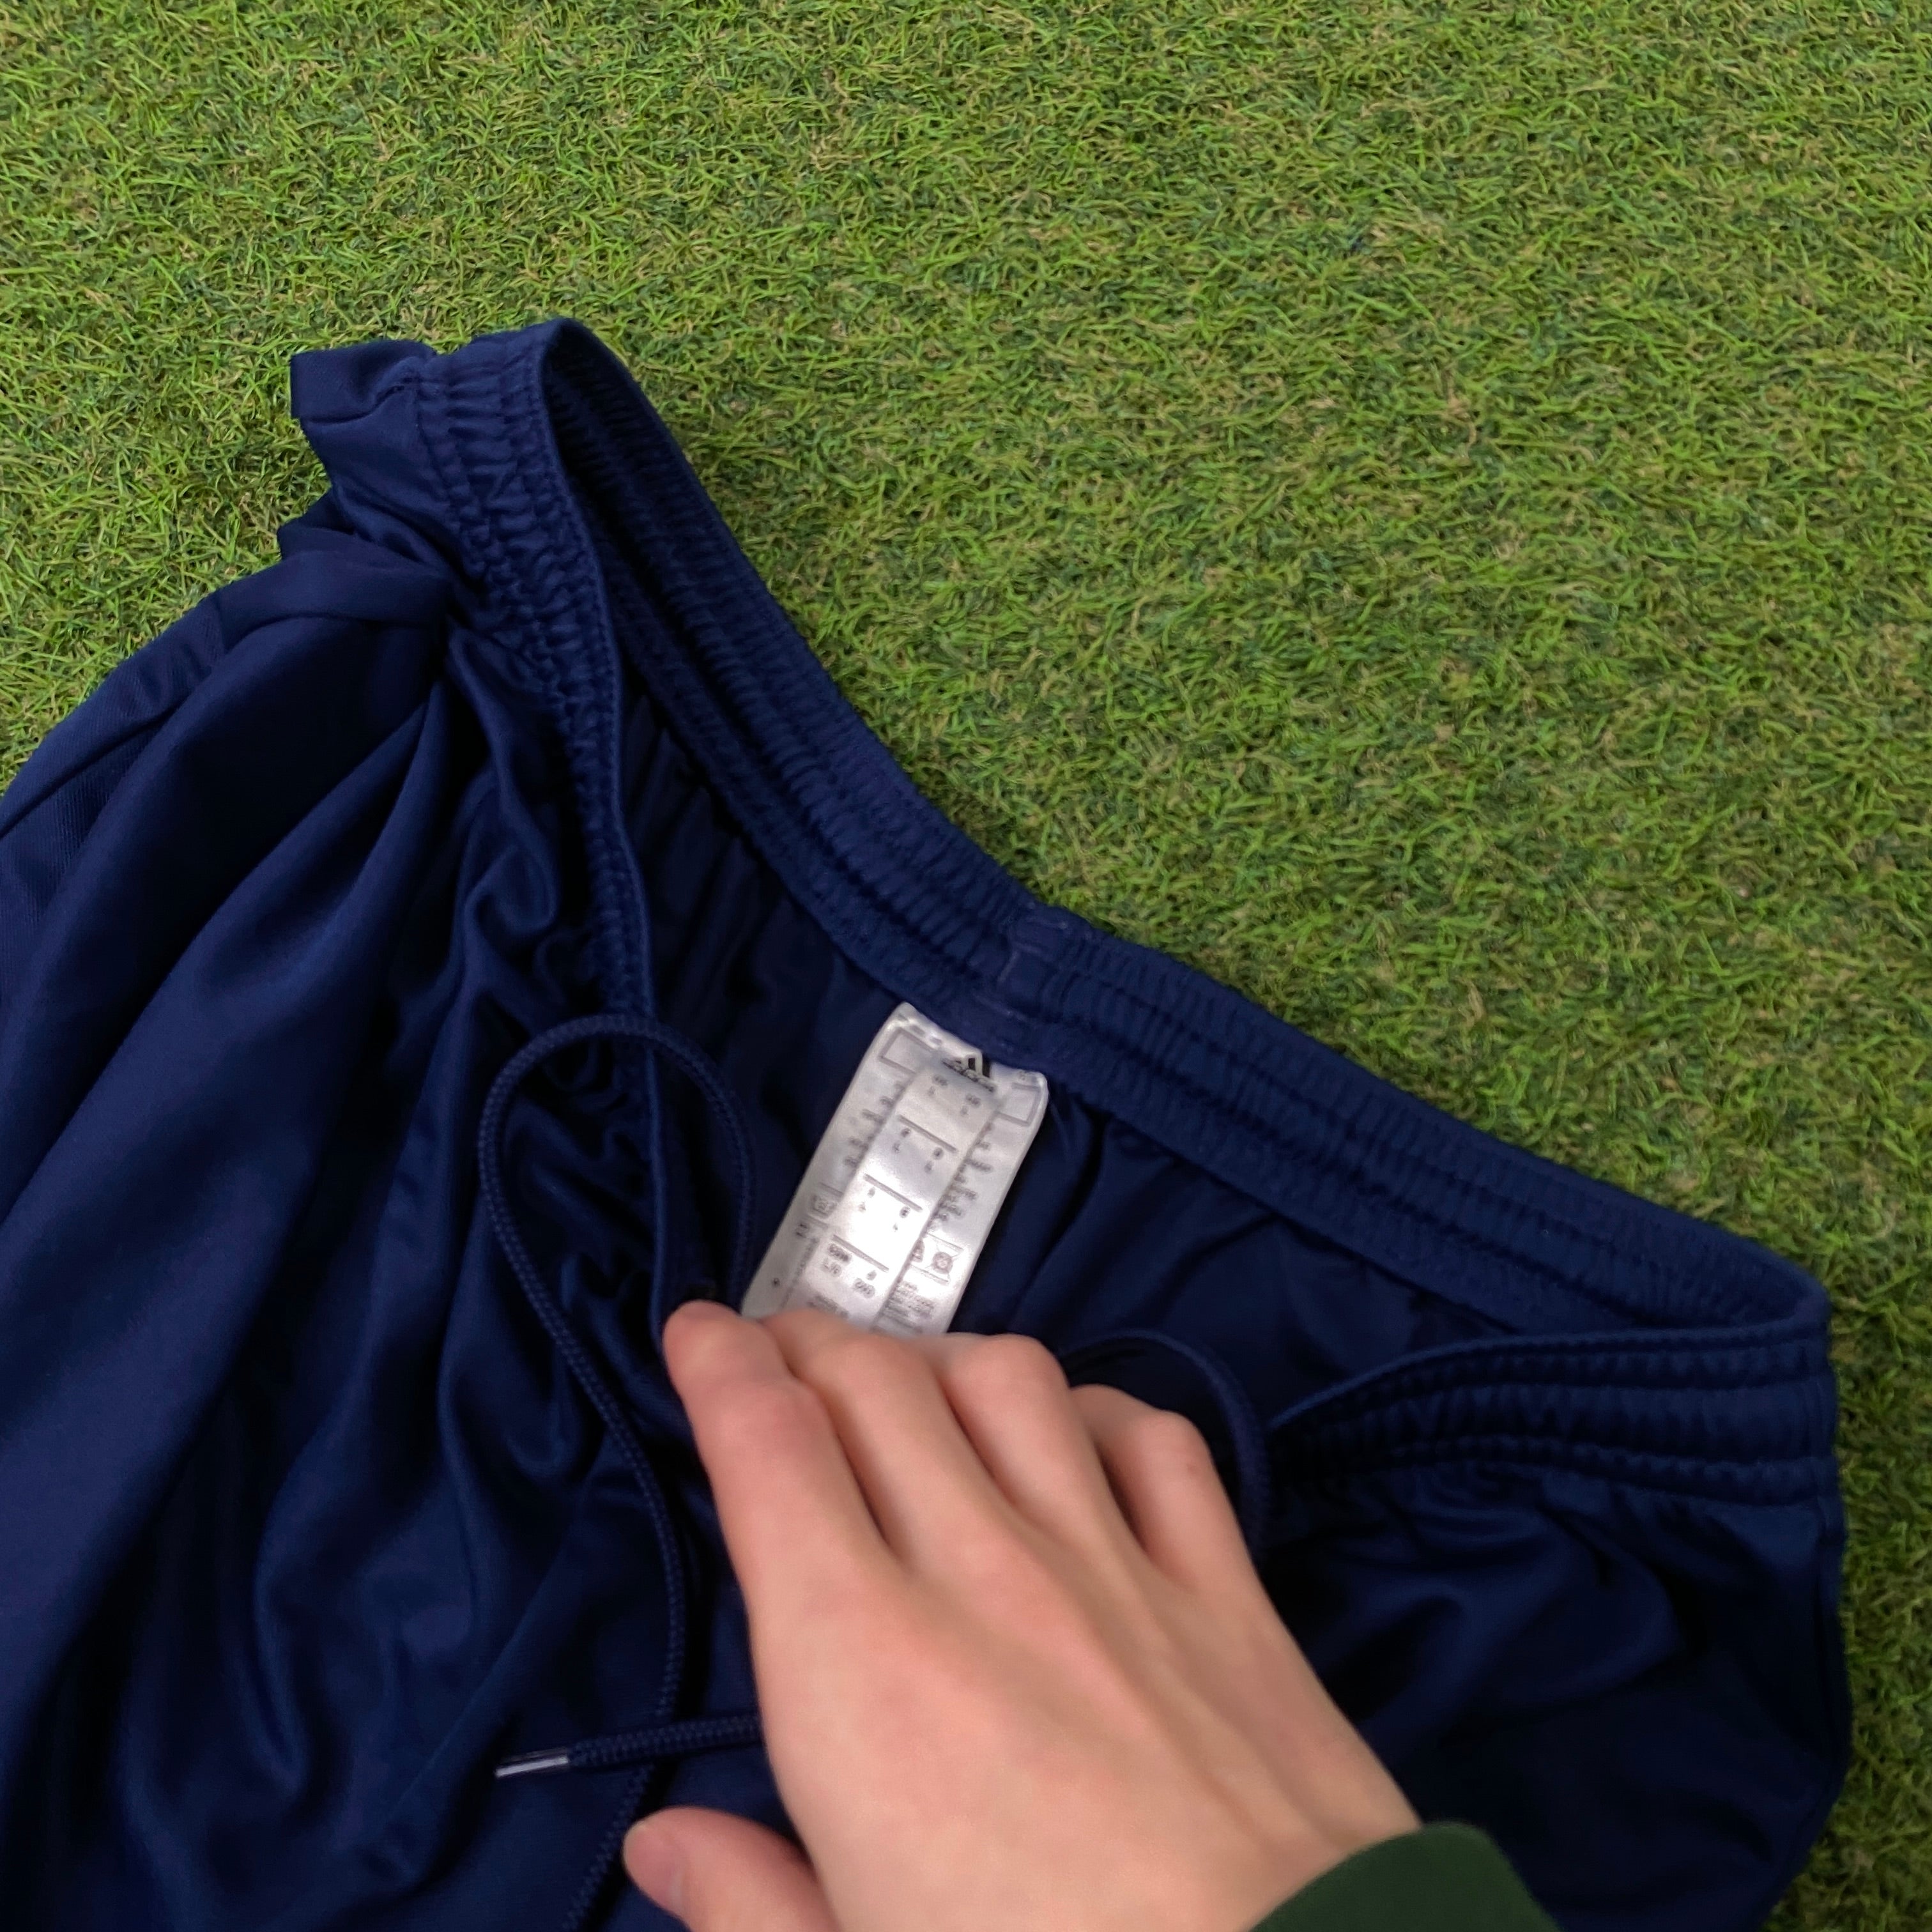 00s Adidas Nylon Football Shorts Blue Large